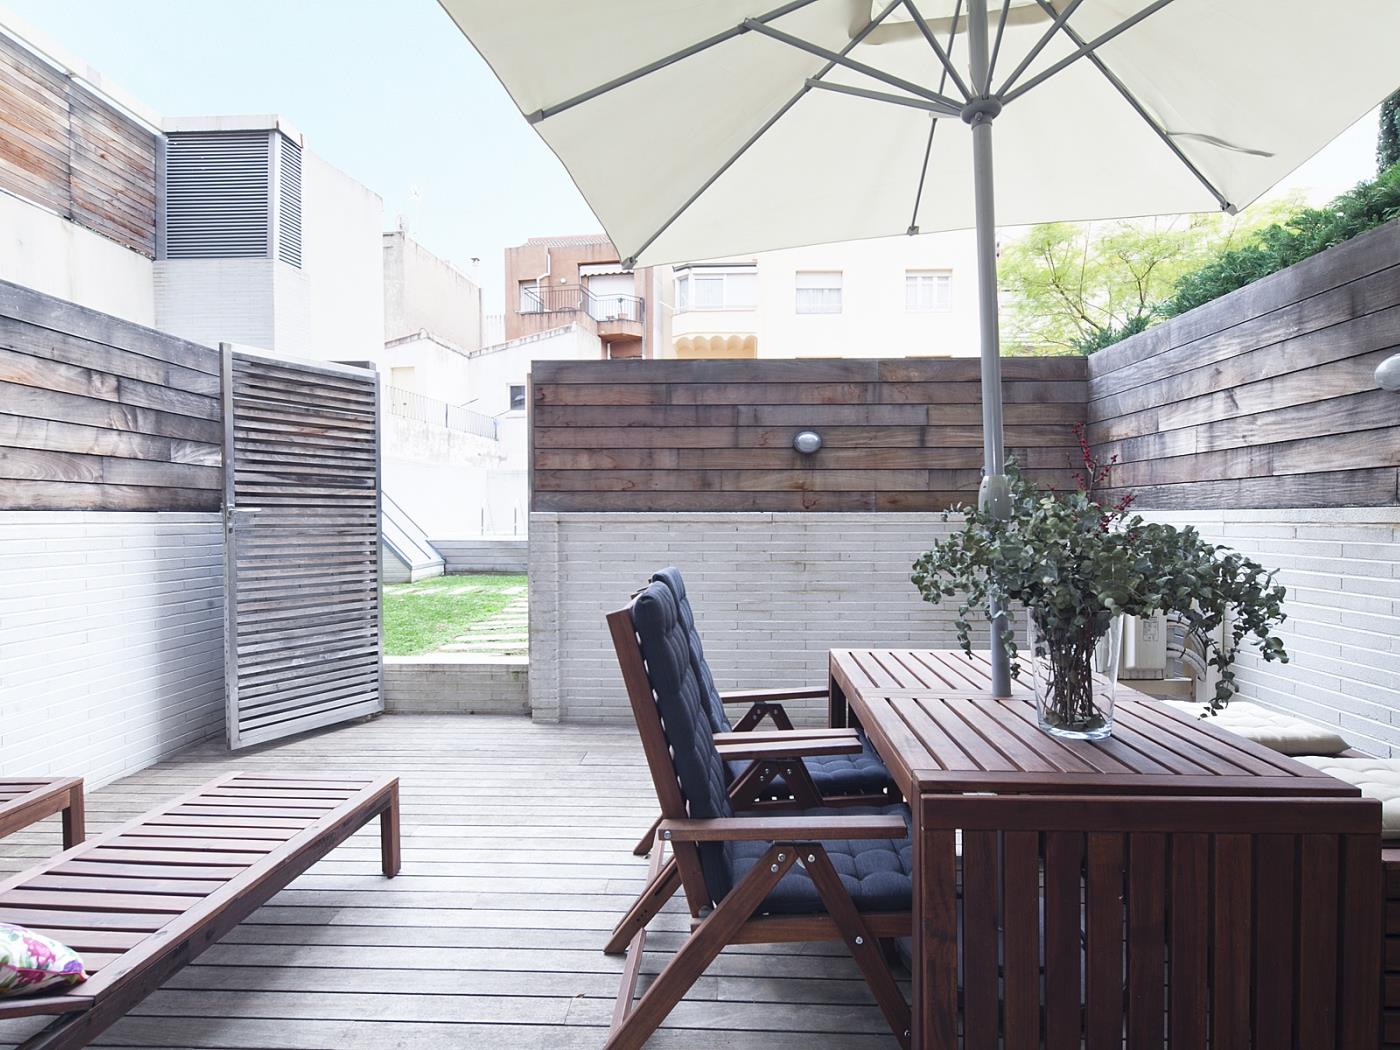 2 duplex pouvant accueillir jusqu'à 16 personnes avec terrasse et piscine - My Space Barcelona Appartements